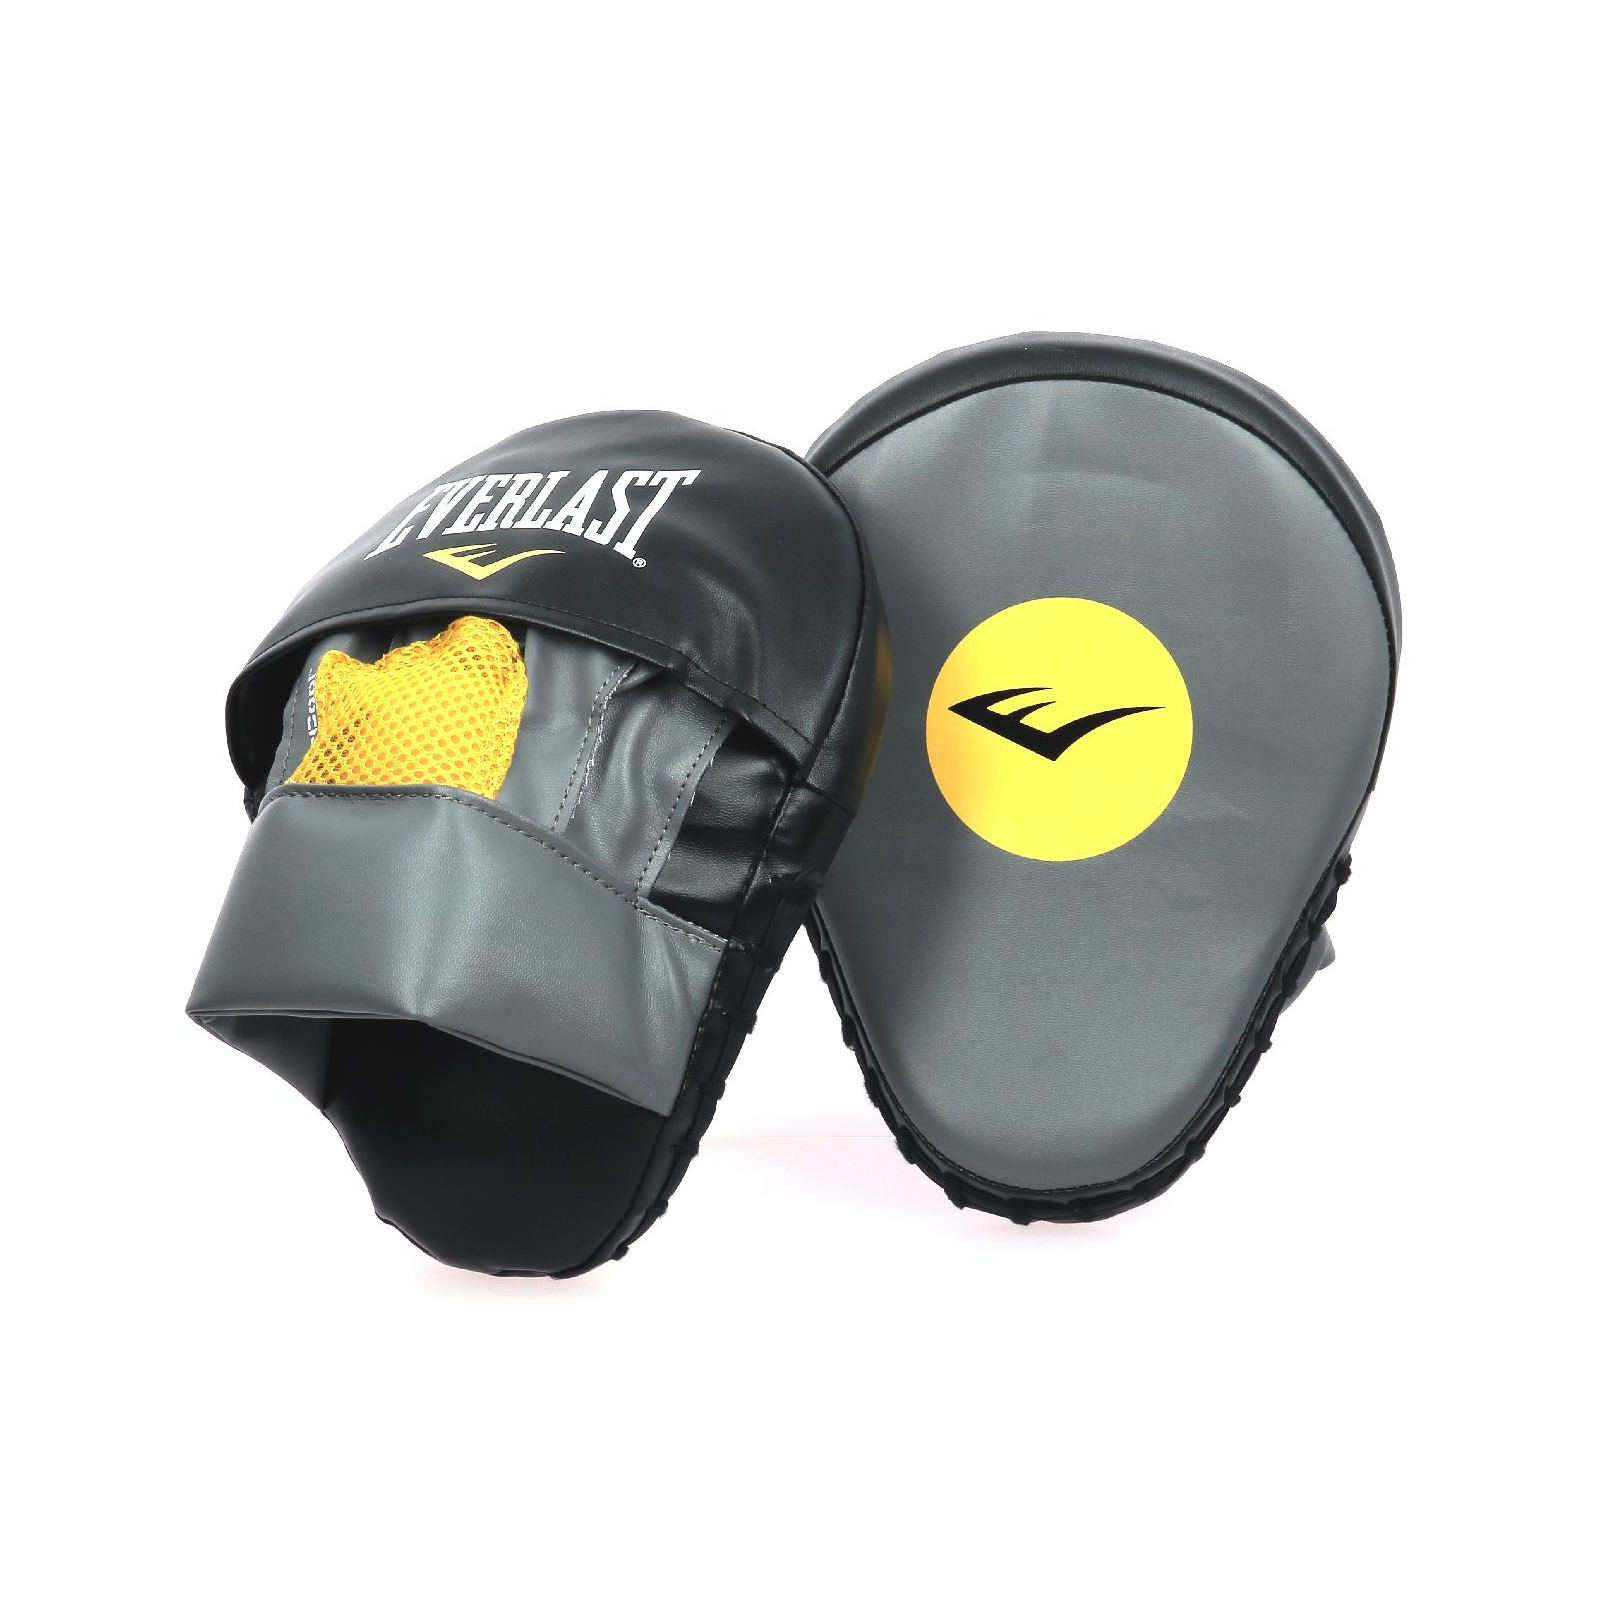 Лапи боксерські Everlast Mantis Punch Mitts 855980-70-123 Сірі UNI (009283503093)